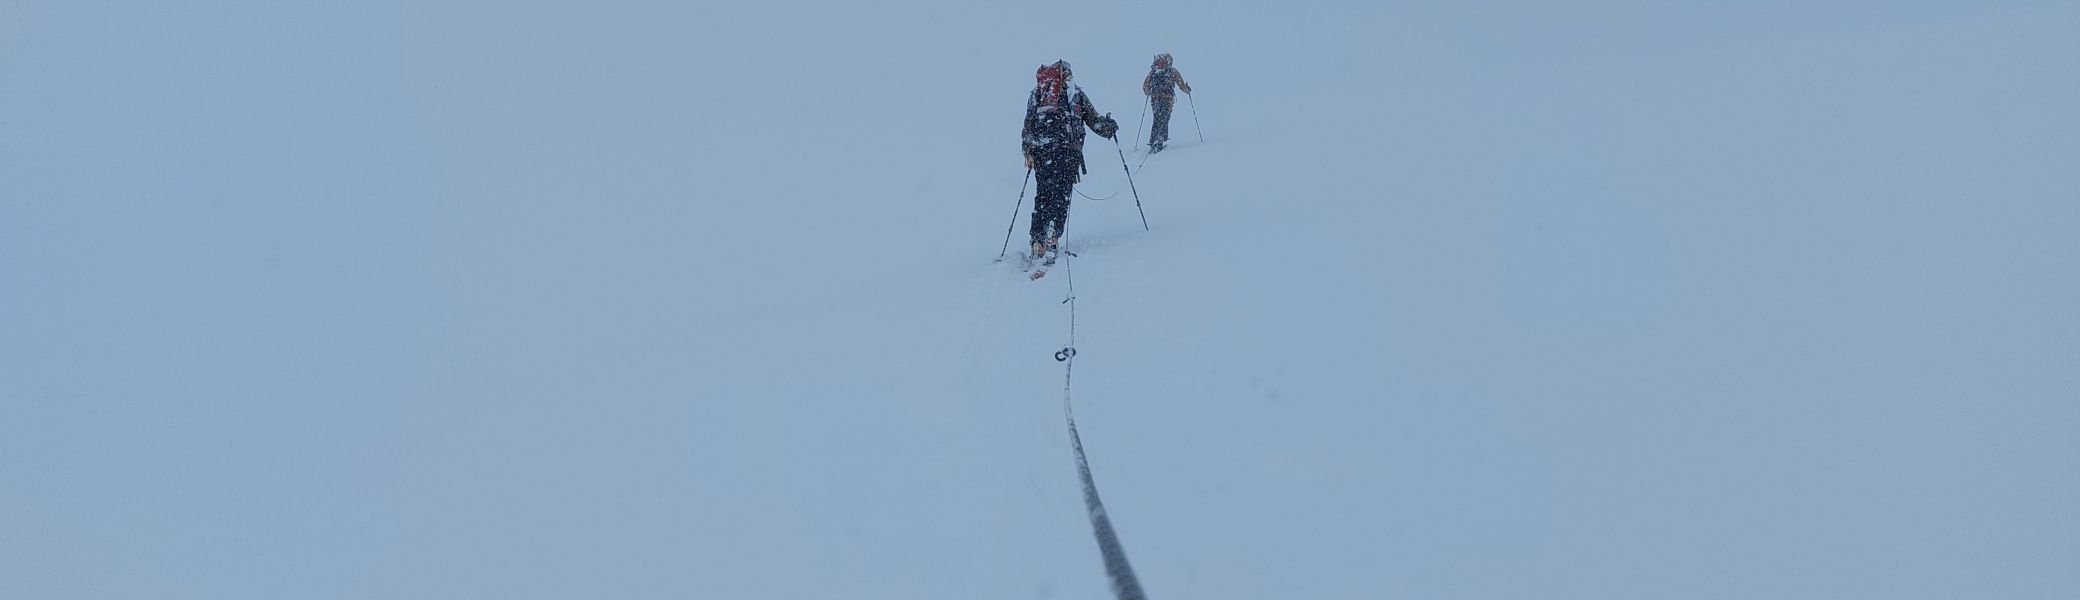 schlechte Sicht am großen Aletsch-Gletscher | © Leiter-Anstieg zur Konkordiahütte